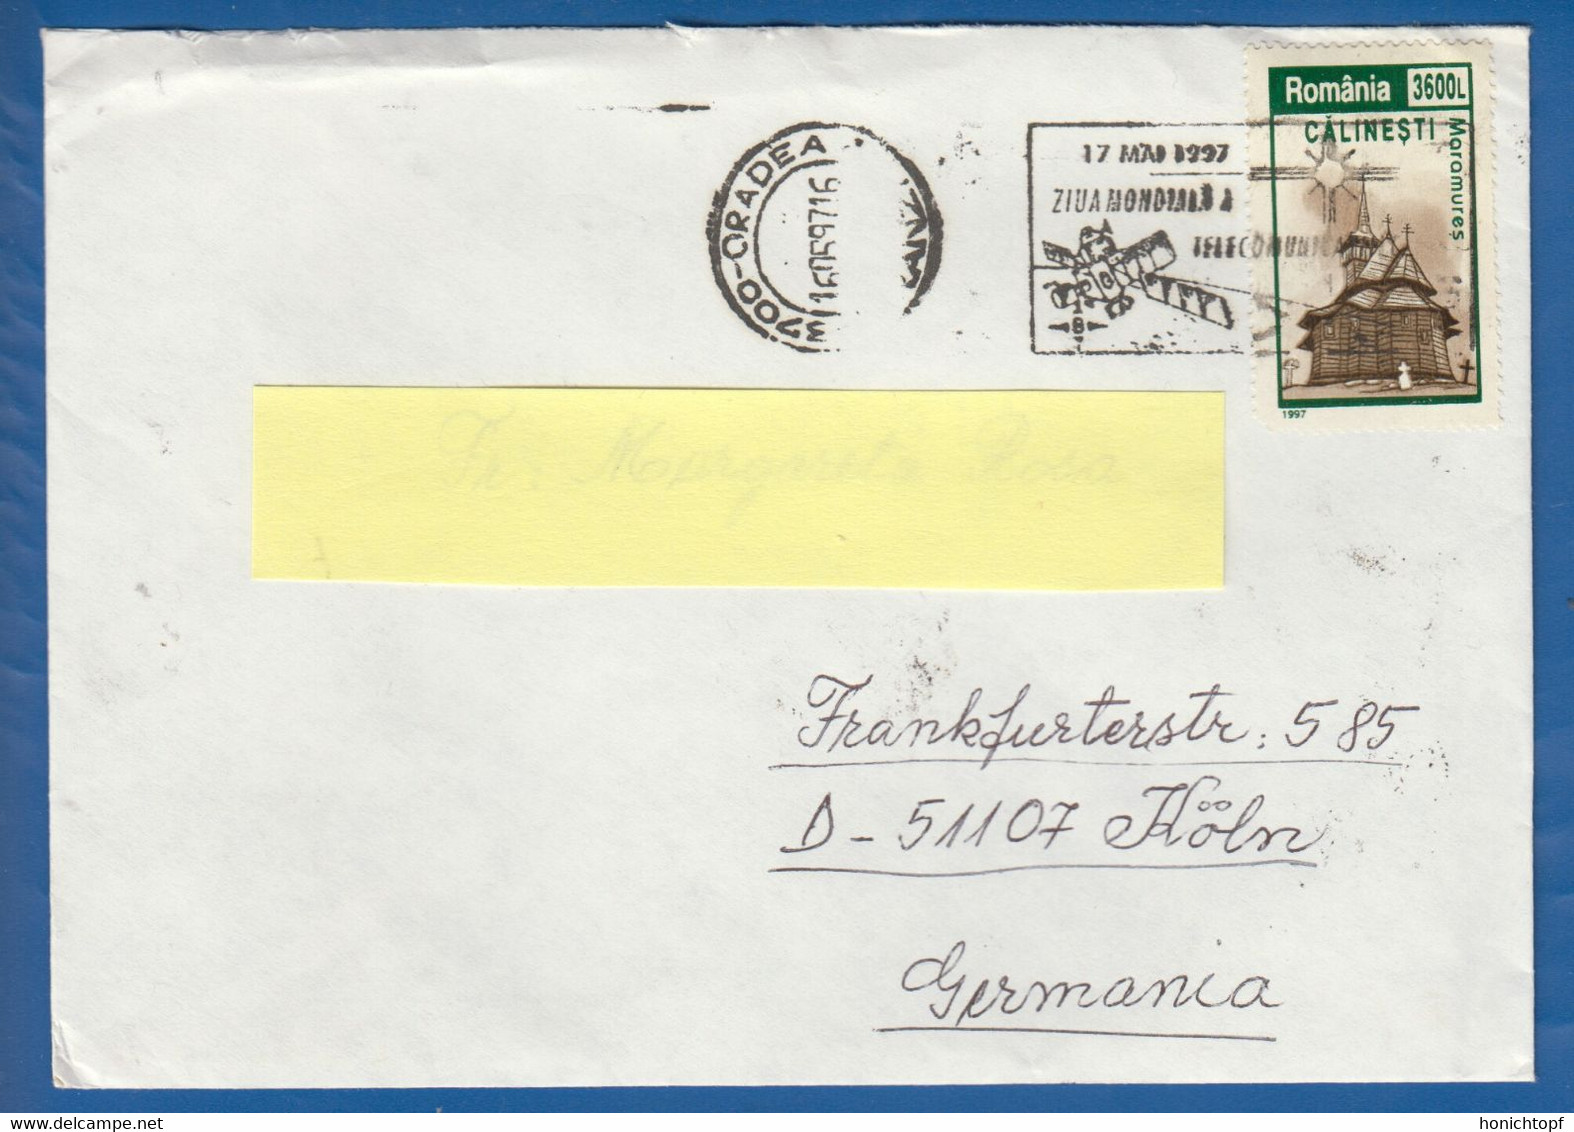 Rumänien; Brief Infla; 1997; Oradea; Romania - Briefe U. Dokumente